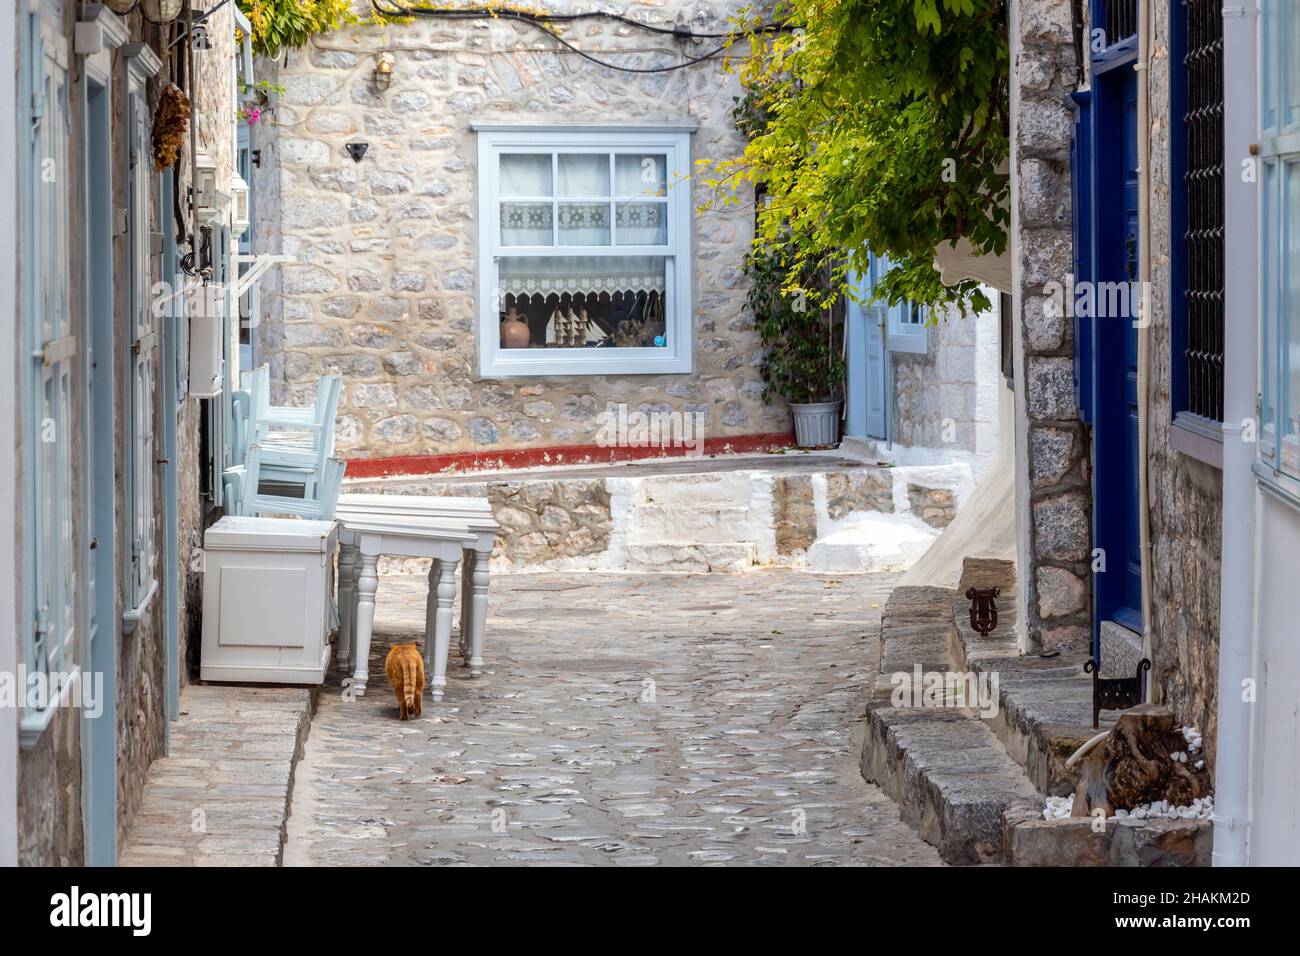 Une rue pittoresque de maisons blanchies à la chaux et de boutiques dans le village de la petite île grecque d'Hydra, en Grèce. Banque D'Images